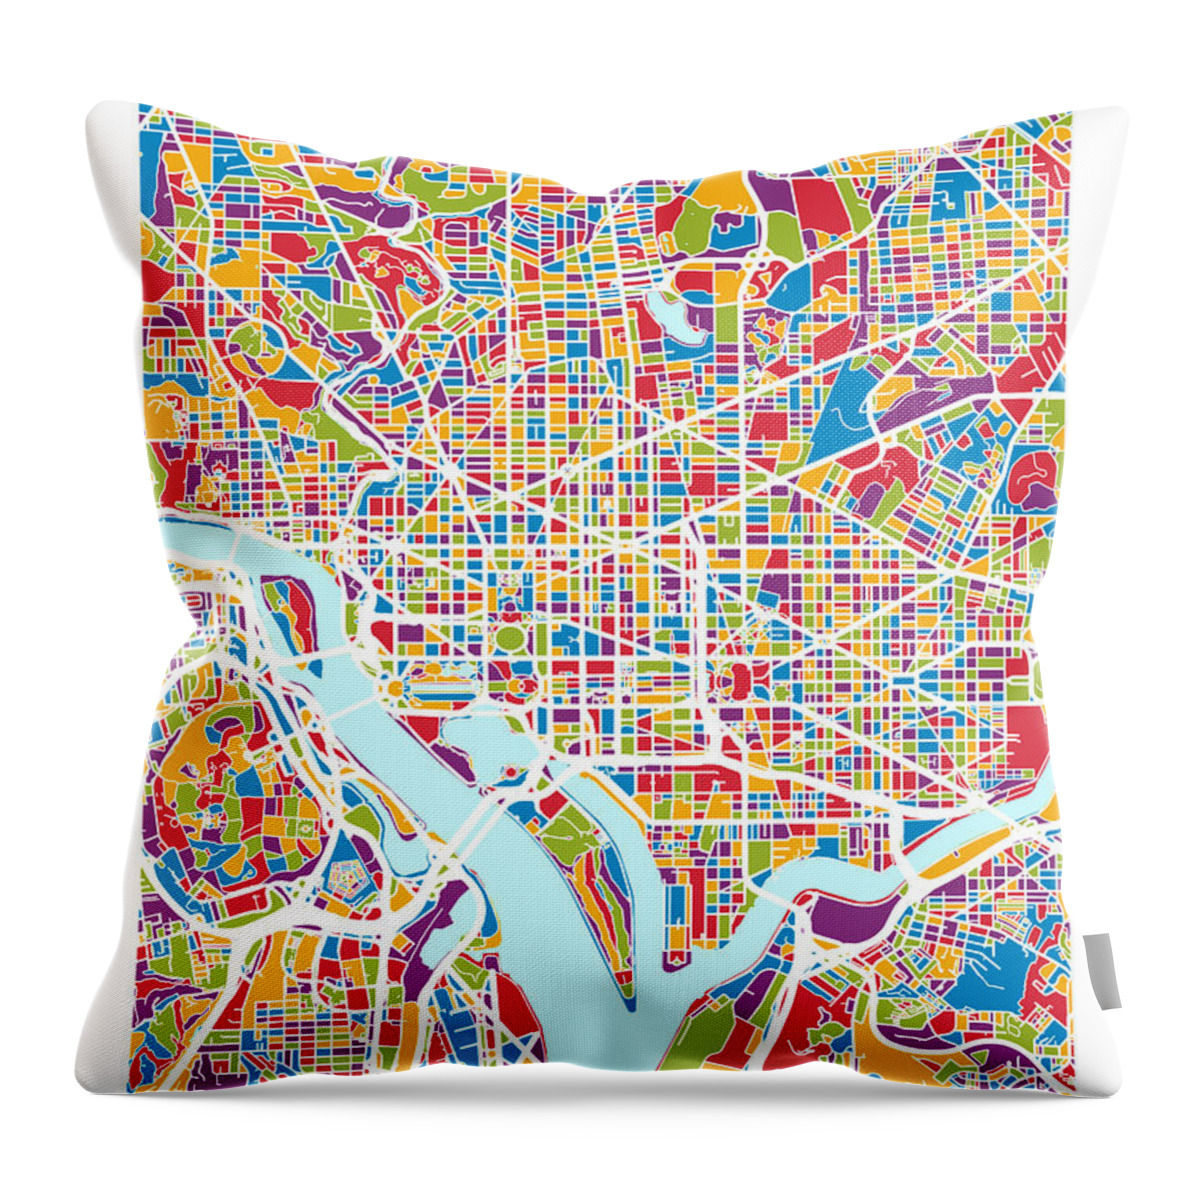 Street Map Throw Pillow featuring the digital art Washington DC Street Map by Michael Tompsett